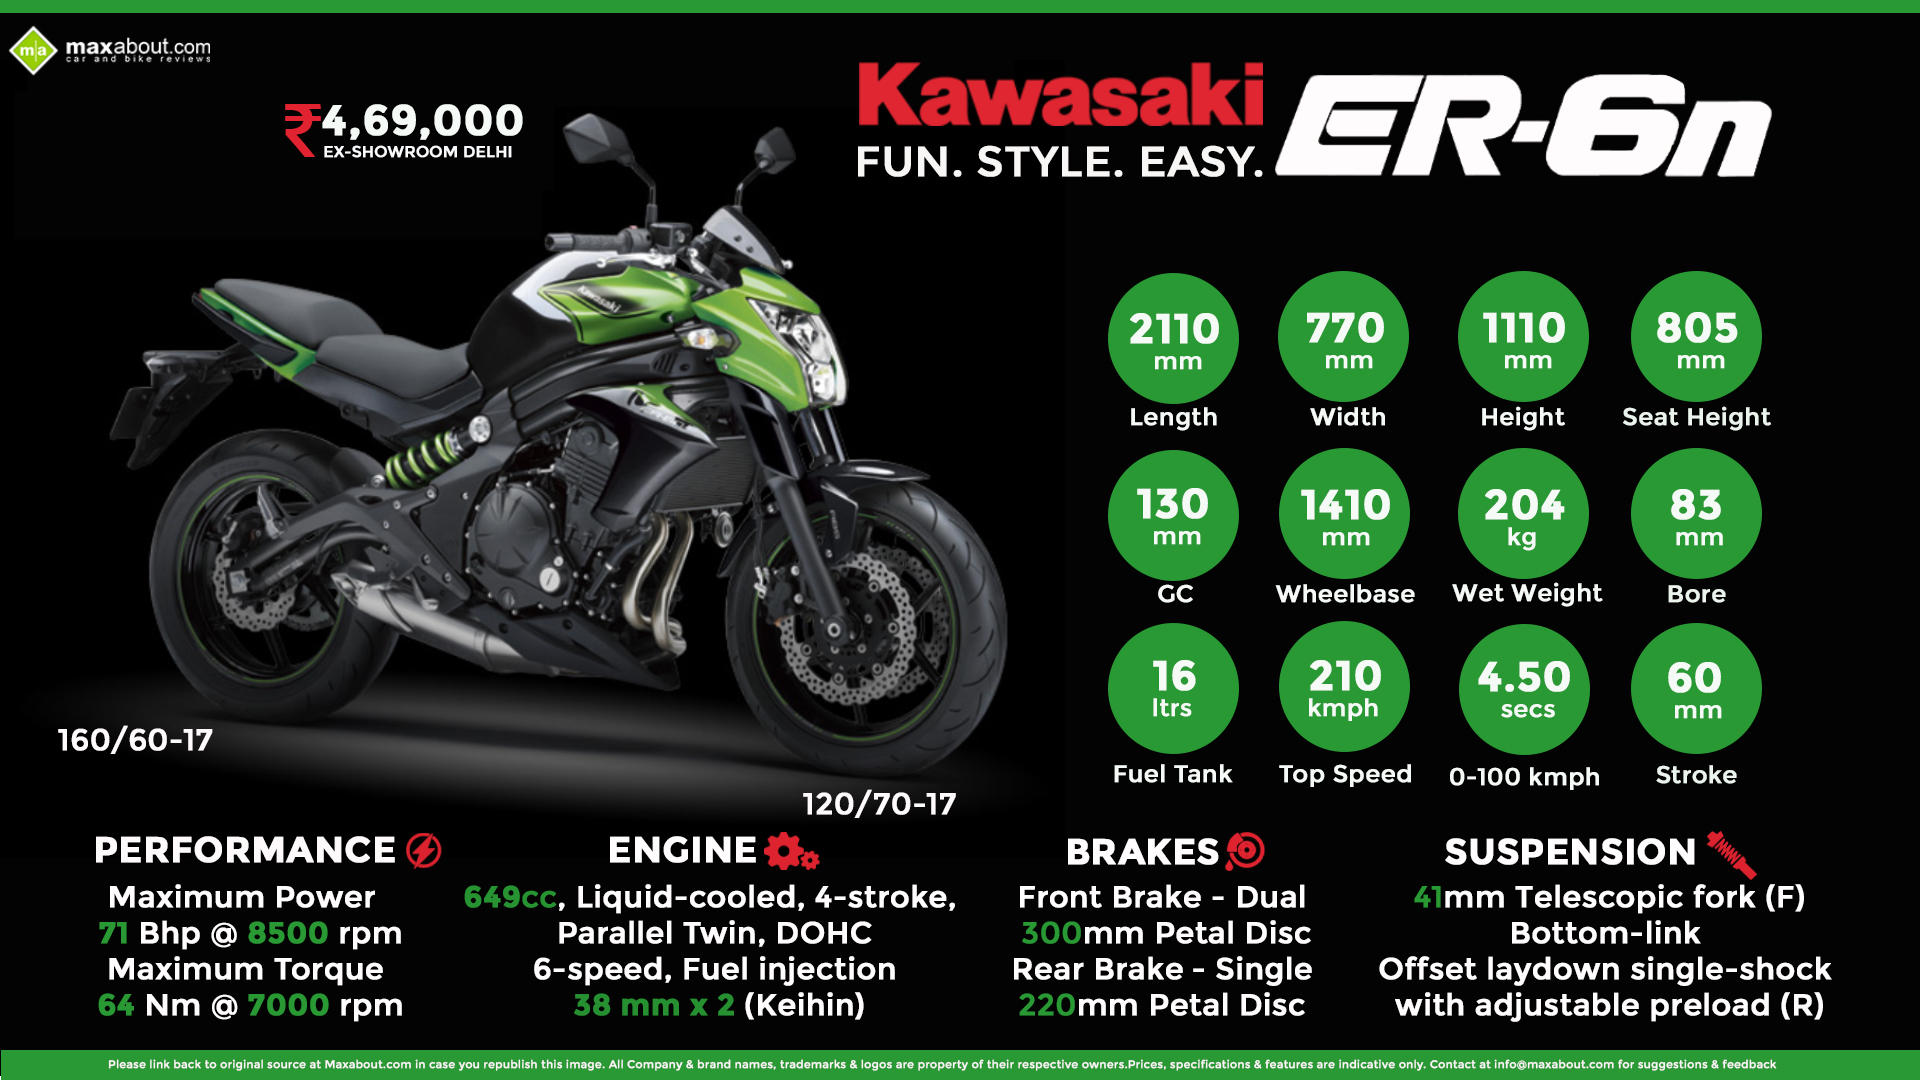 Kawasaki ER-6n - Fun. Style. Easy.